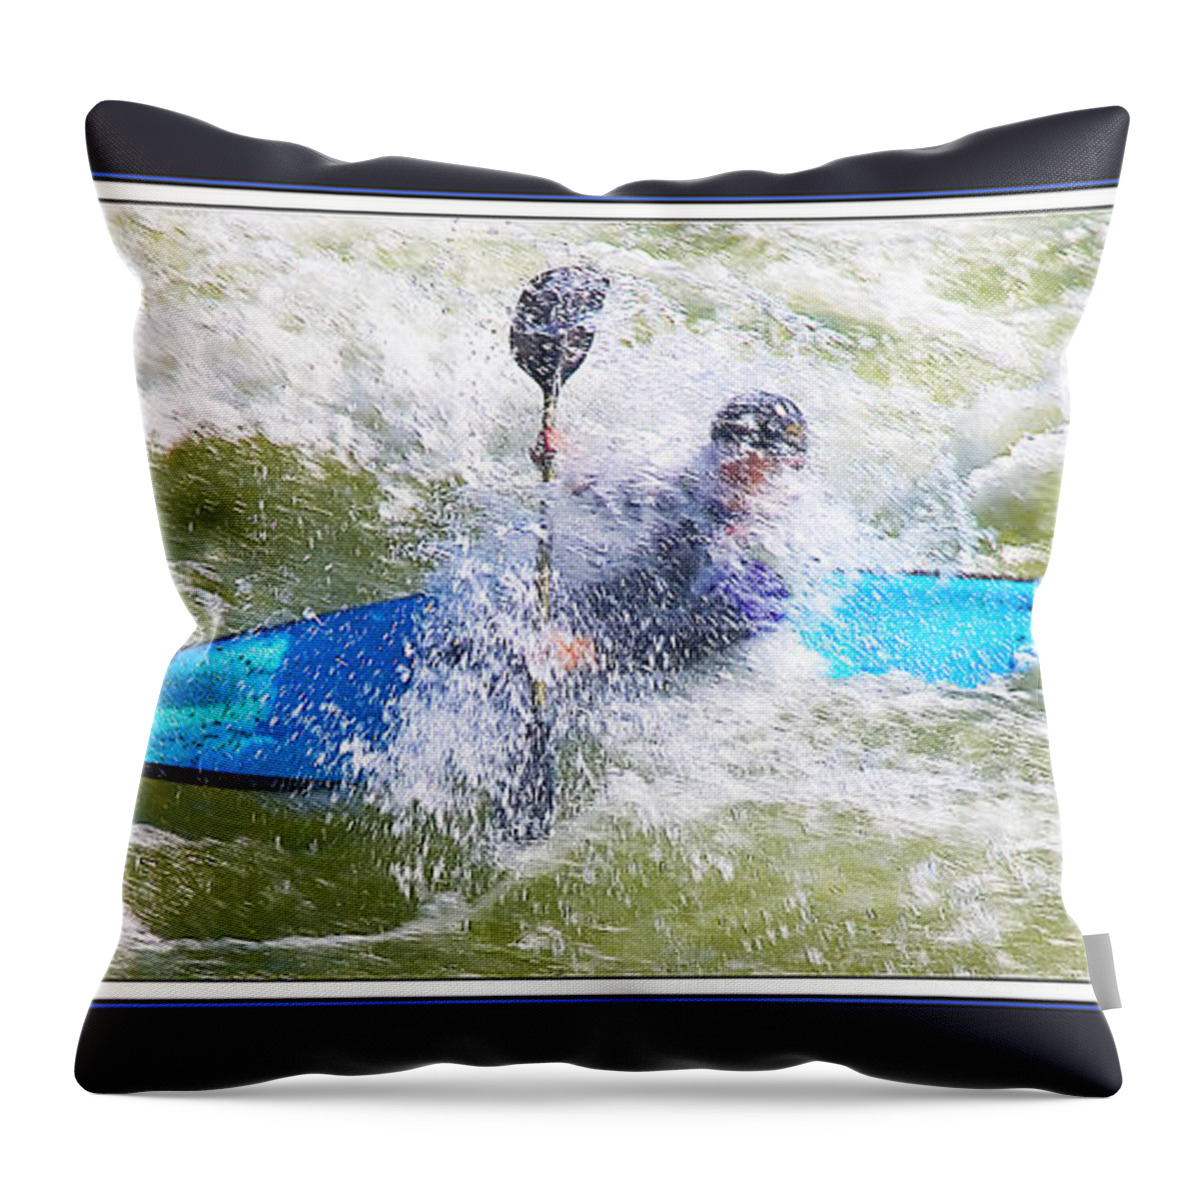 Kayak Throw Pillow featuring the digital art Blue Kayak at Great Falls MD by Joe Paradis